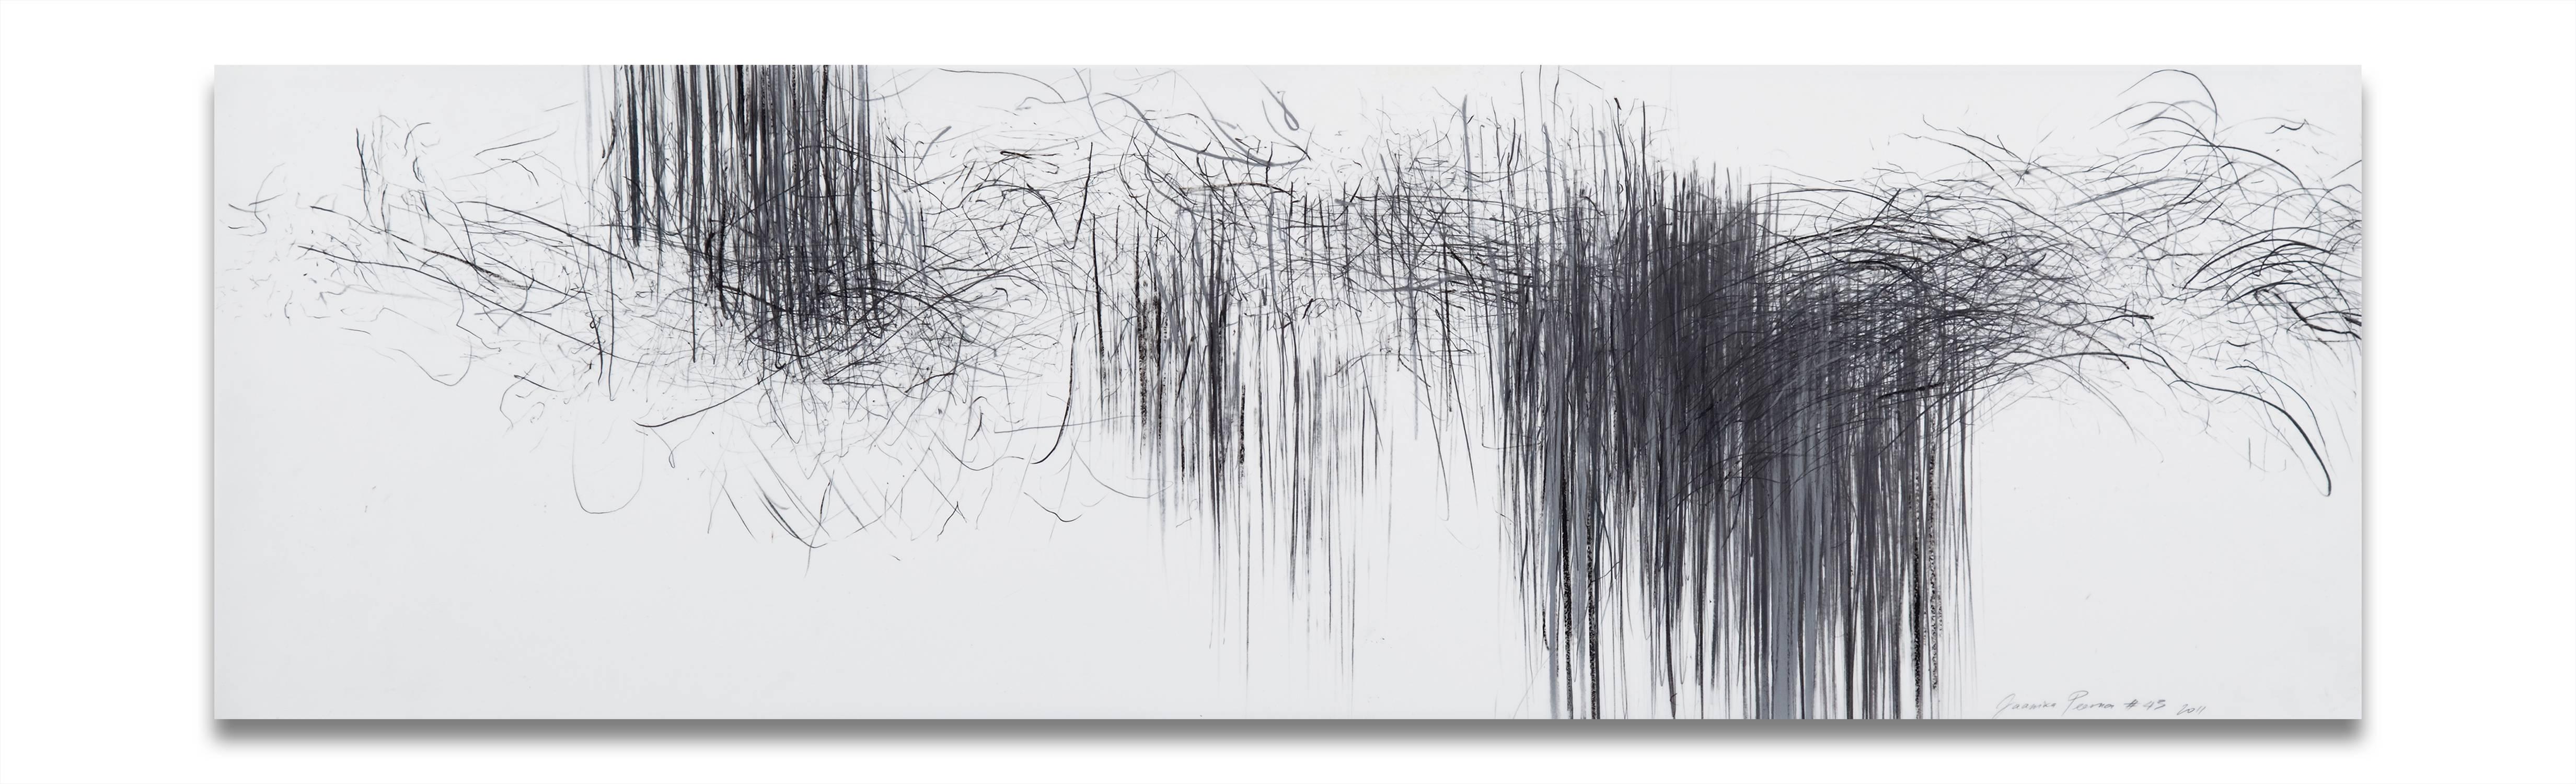 Jaanika Peerna Abstract Drawing - Storm series horizontal 43 (Abstract drawing)